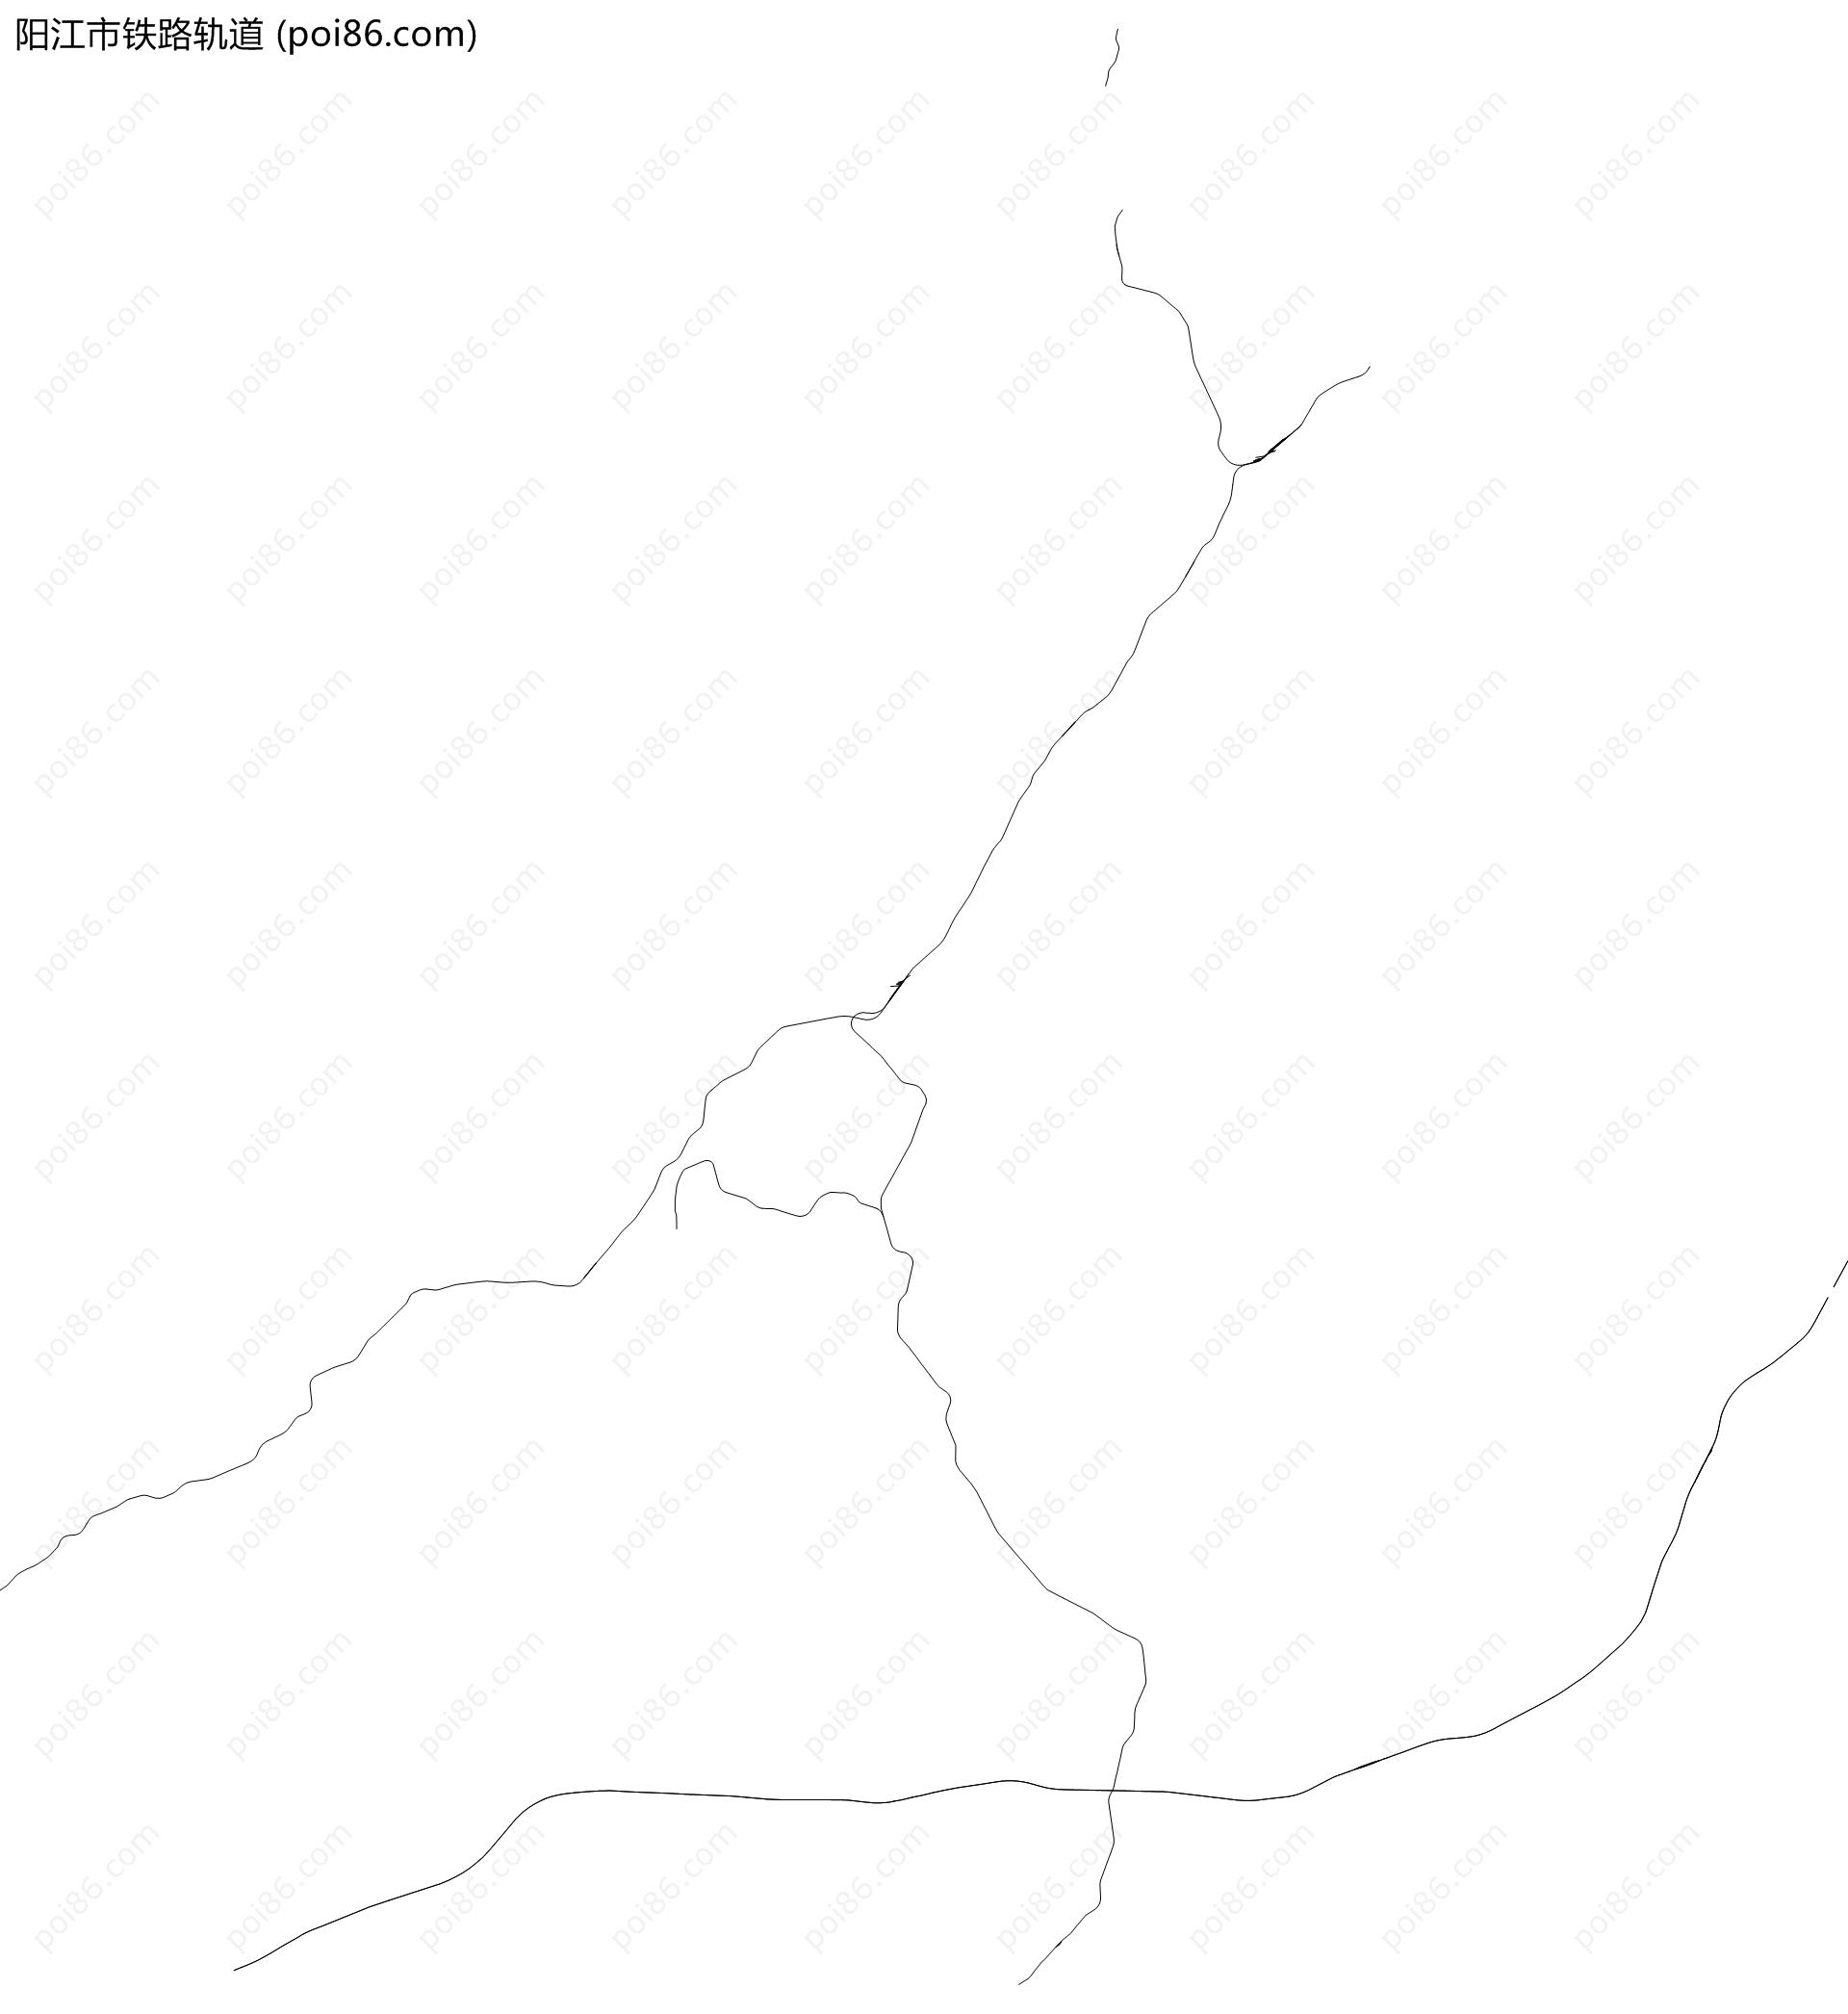 阳江市铁路轨道地图